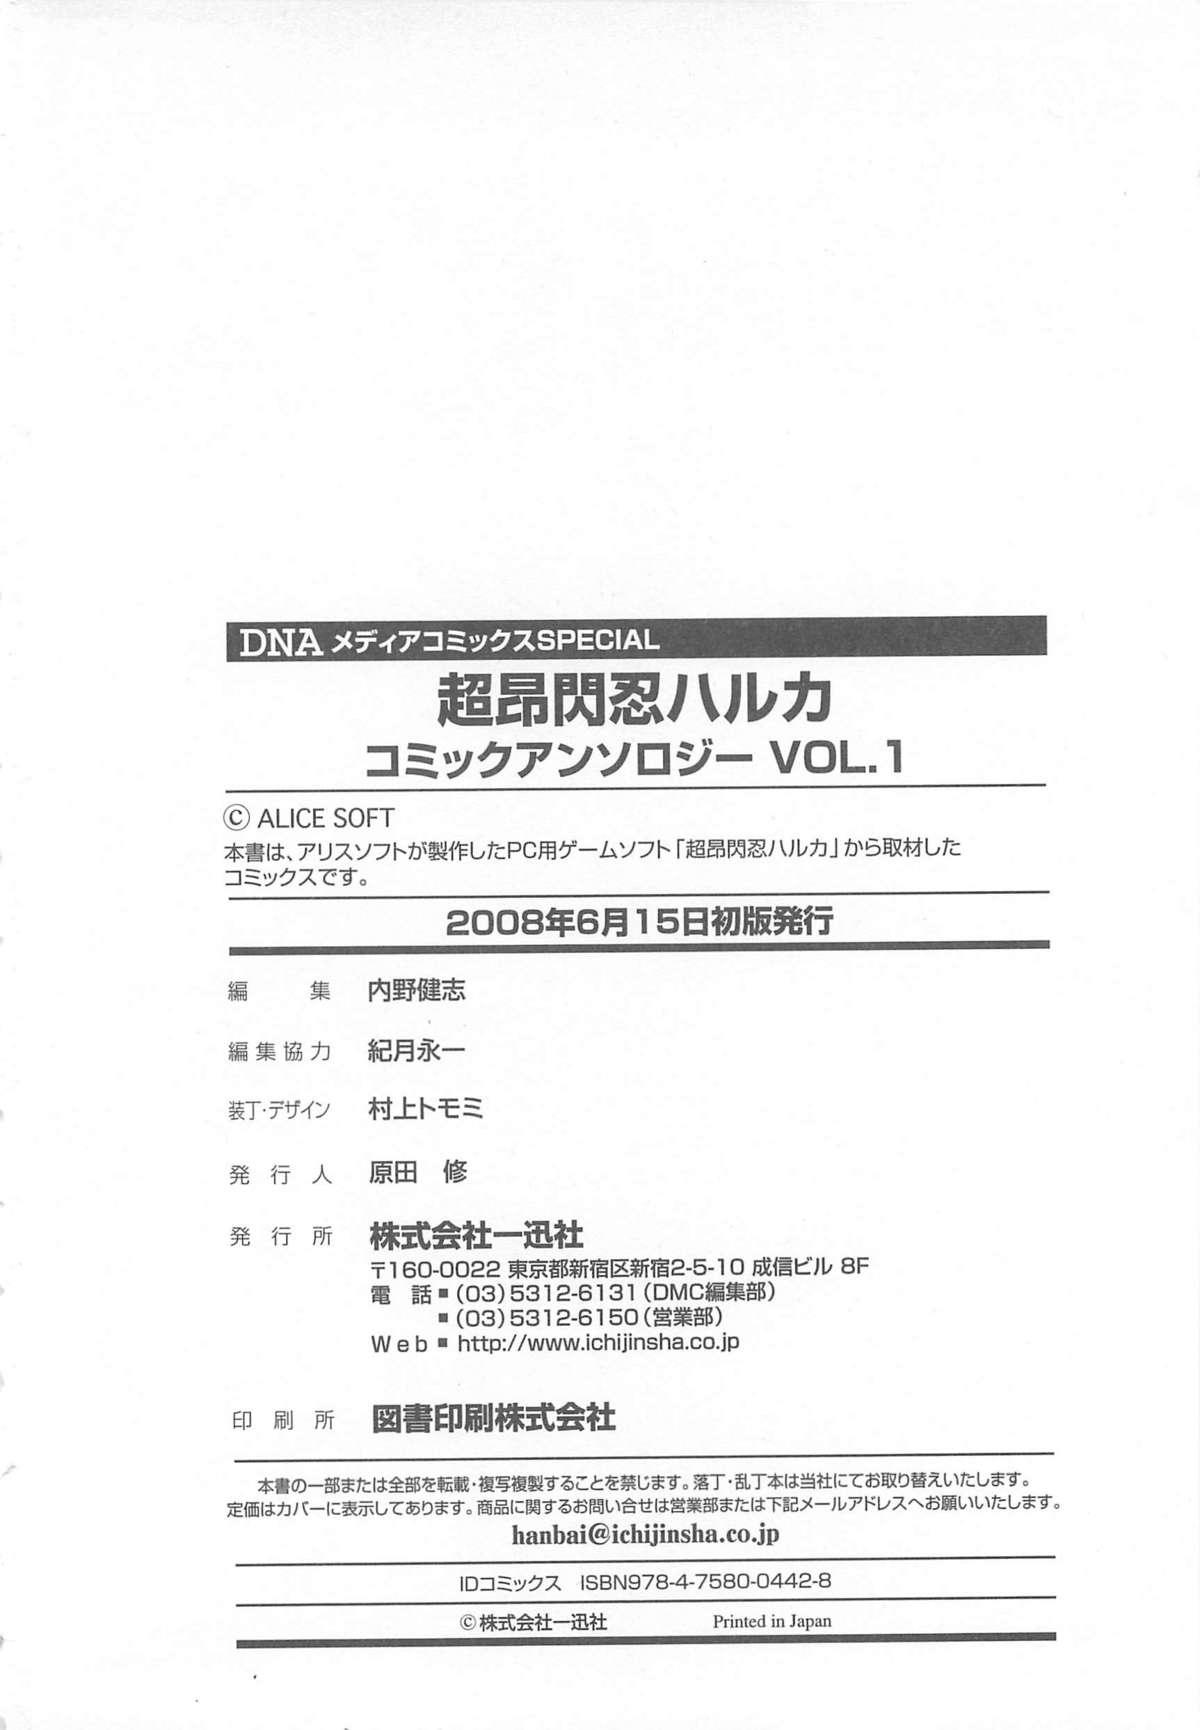 Joi Choukou Sennin Haruka Comic Anthology Vol.1 - Beat blades haruka Foursome - Page 159